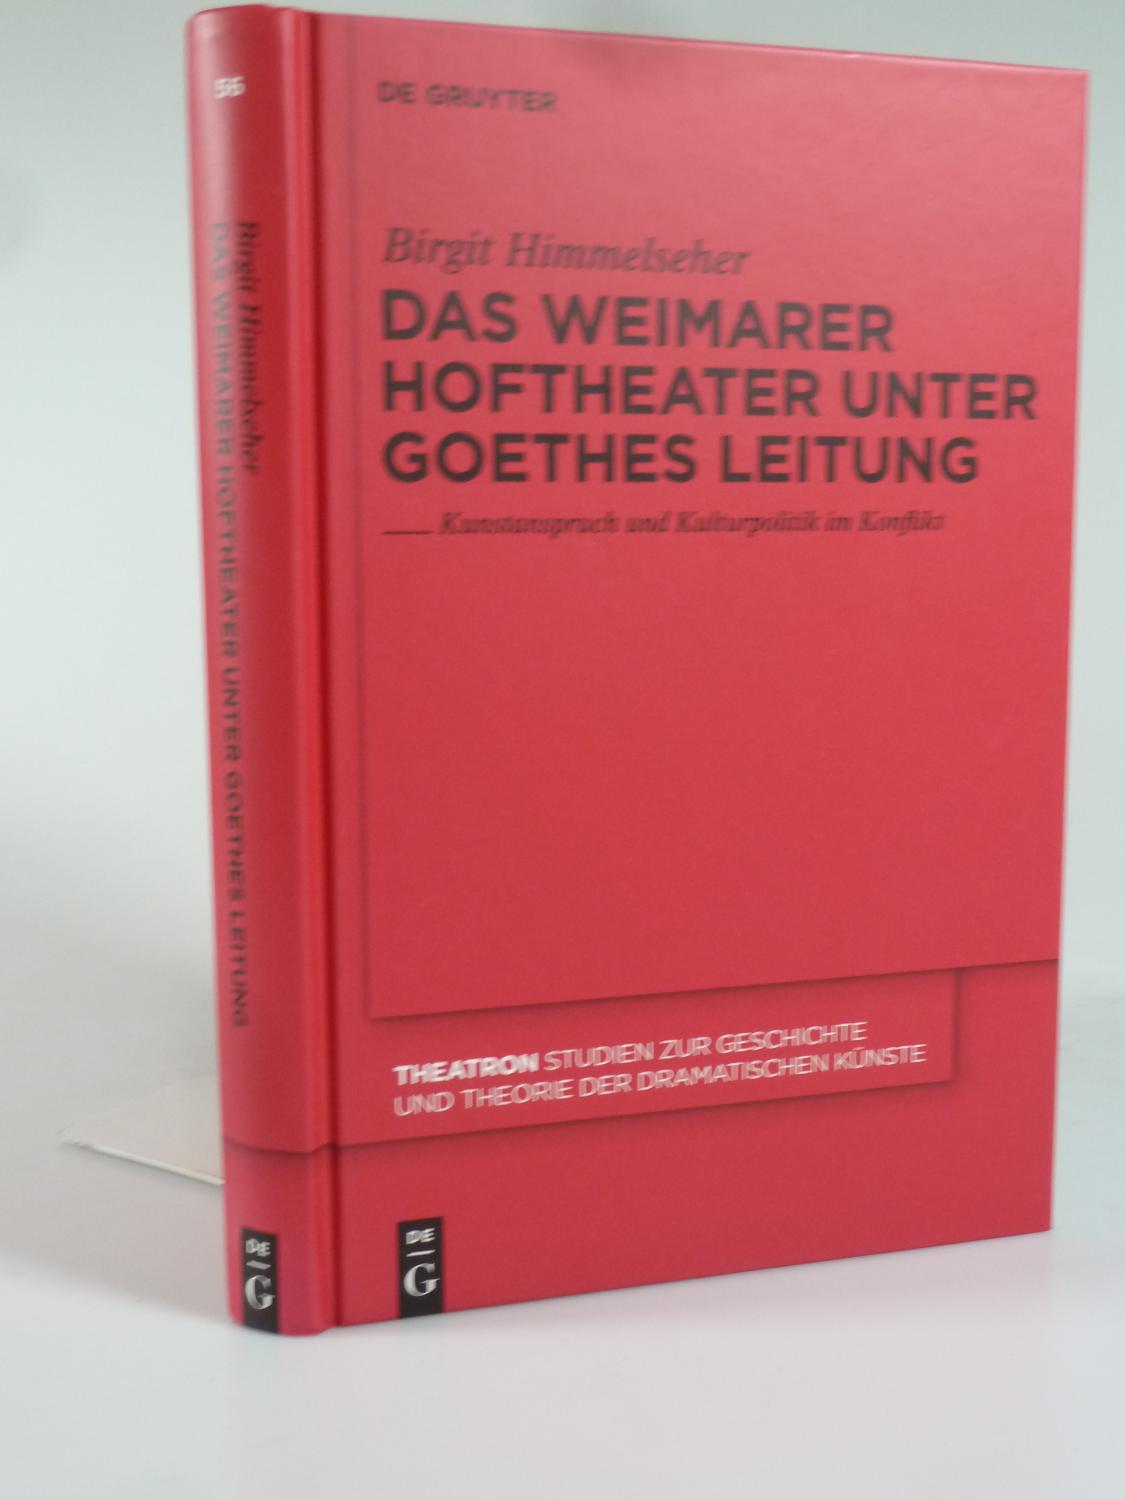 Das Weimarer Hoftheater unter Goethes Leitung. - HIMMELSEHER, Birgit.